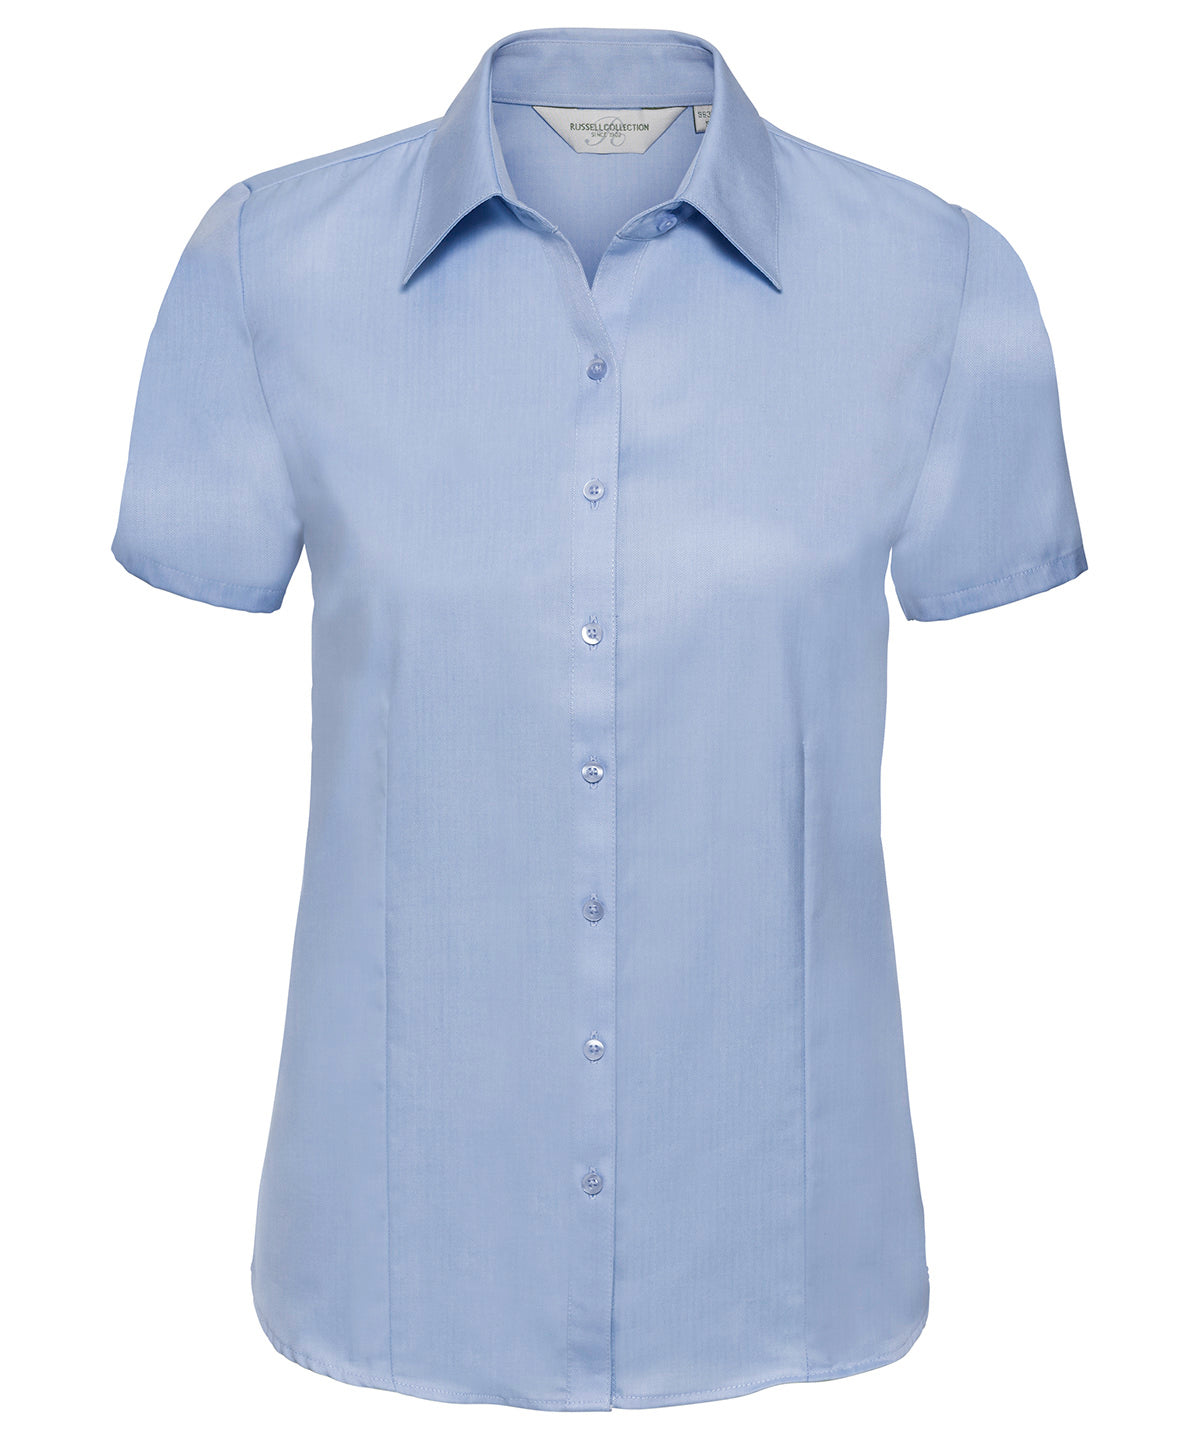 Russell Women'S Short Sleeve Herringbone Shirt